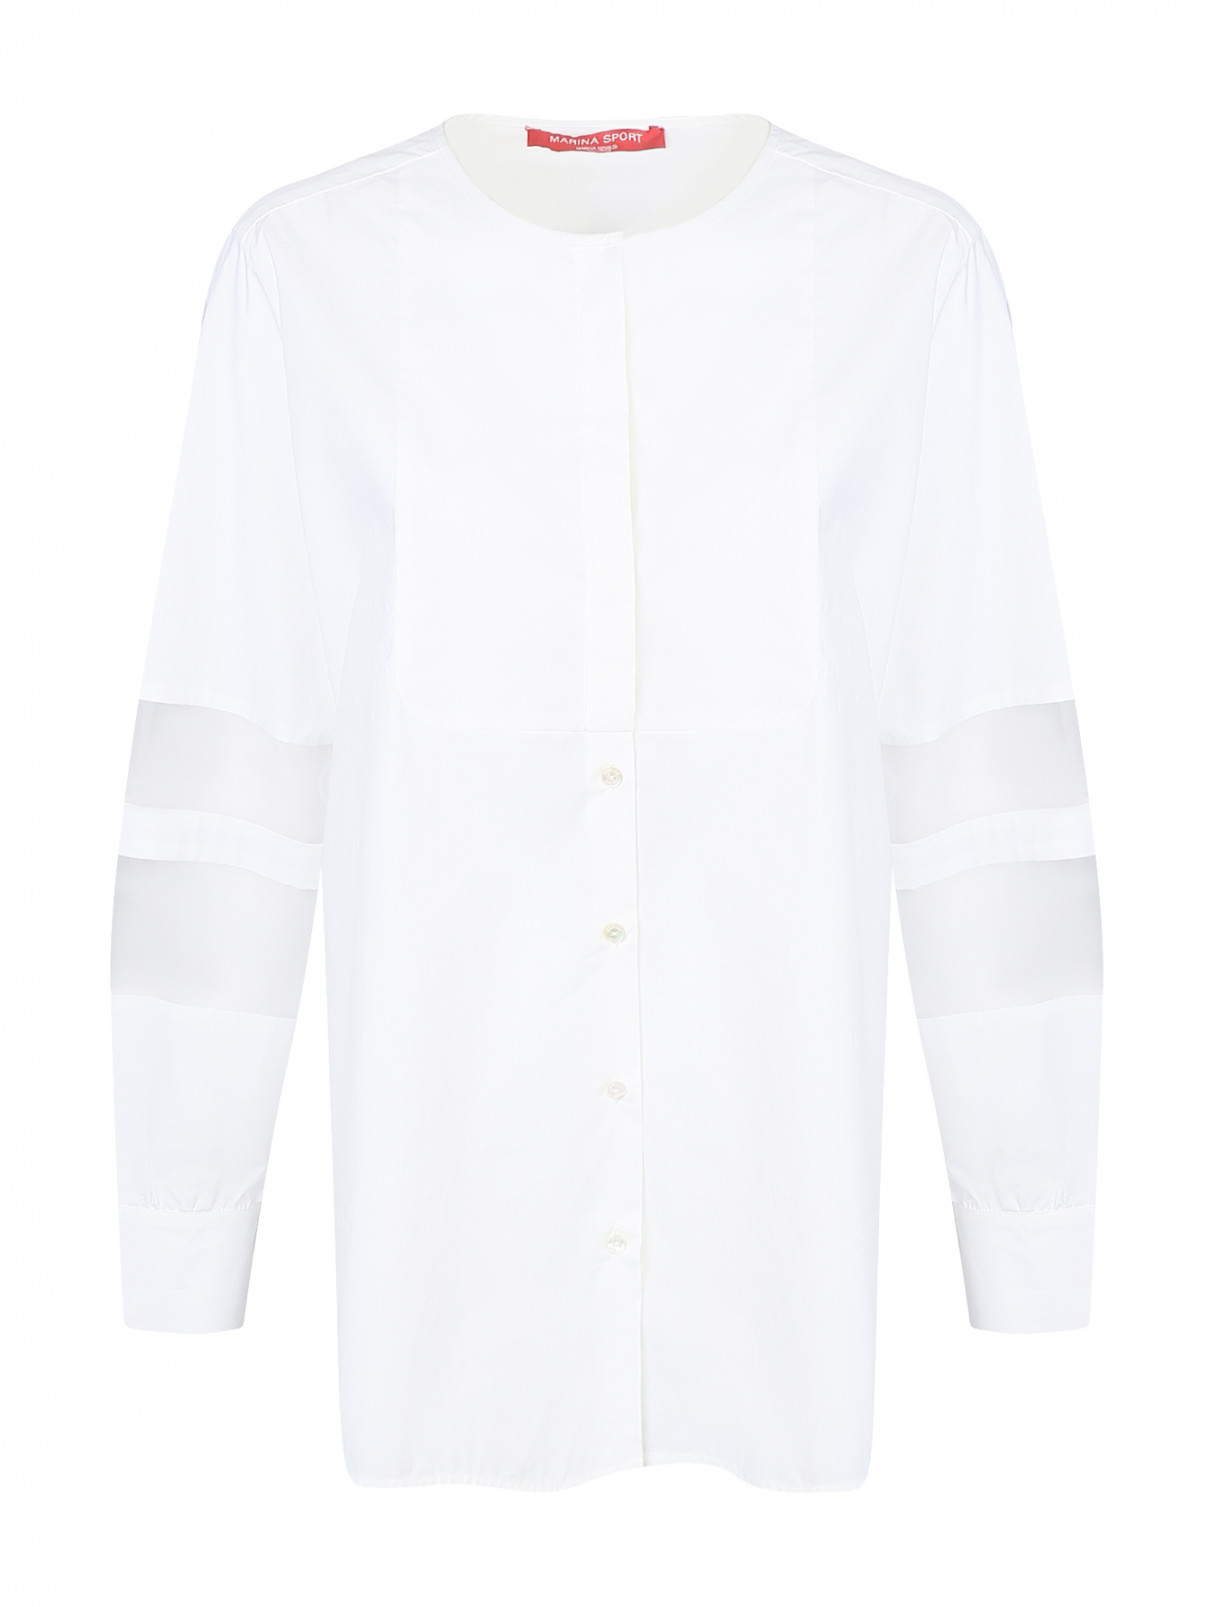 Блуза из хлопка с прозрачными вставками на рукавах Marina Rinaldi  –  Общий вид  – Цвет:  Белый